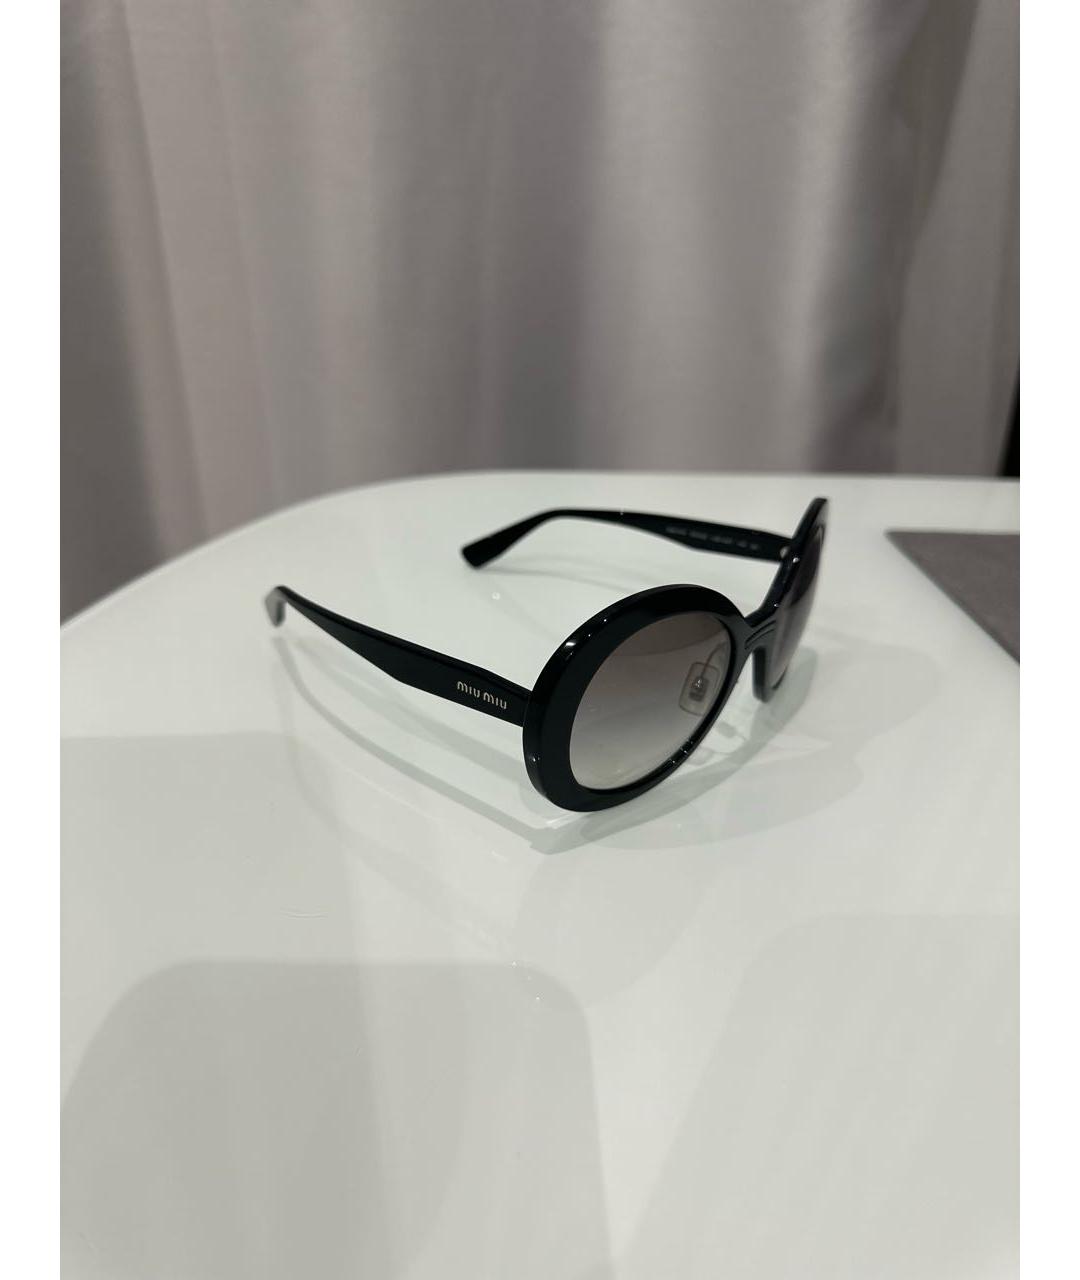 MIU MIU Черные пластиковые солнцезащитные очки, фото 2